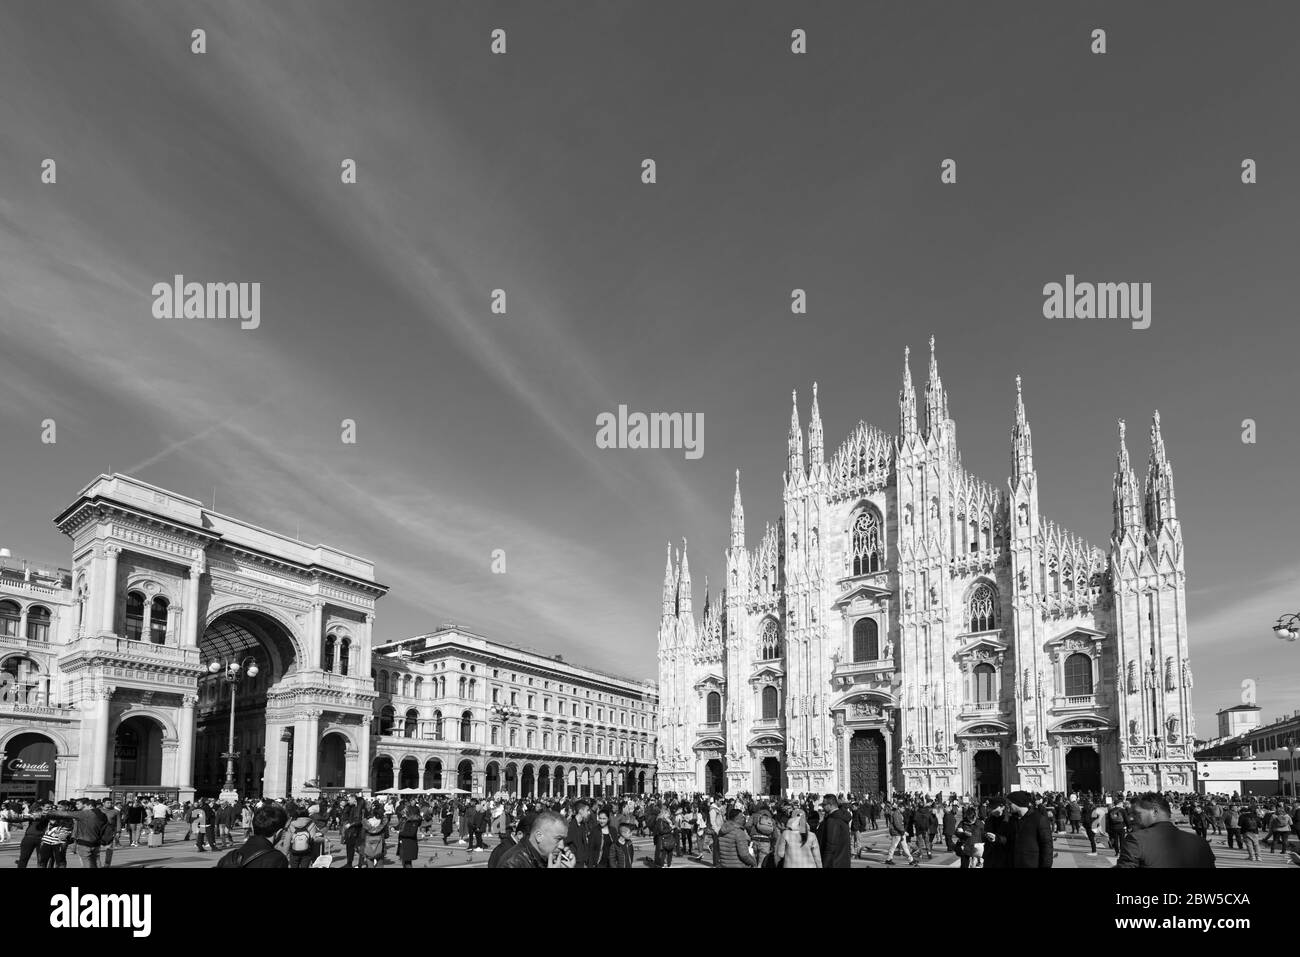 MILANO, ITALIA - 16 MARZO 2018: Foto in bianco e nero del Duomo di Milano e della Galleria Vittorio Emanuele II durante la giornata di sole a Milano. Foto Stock